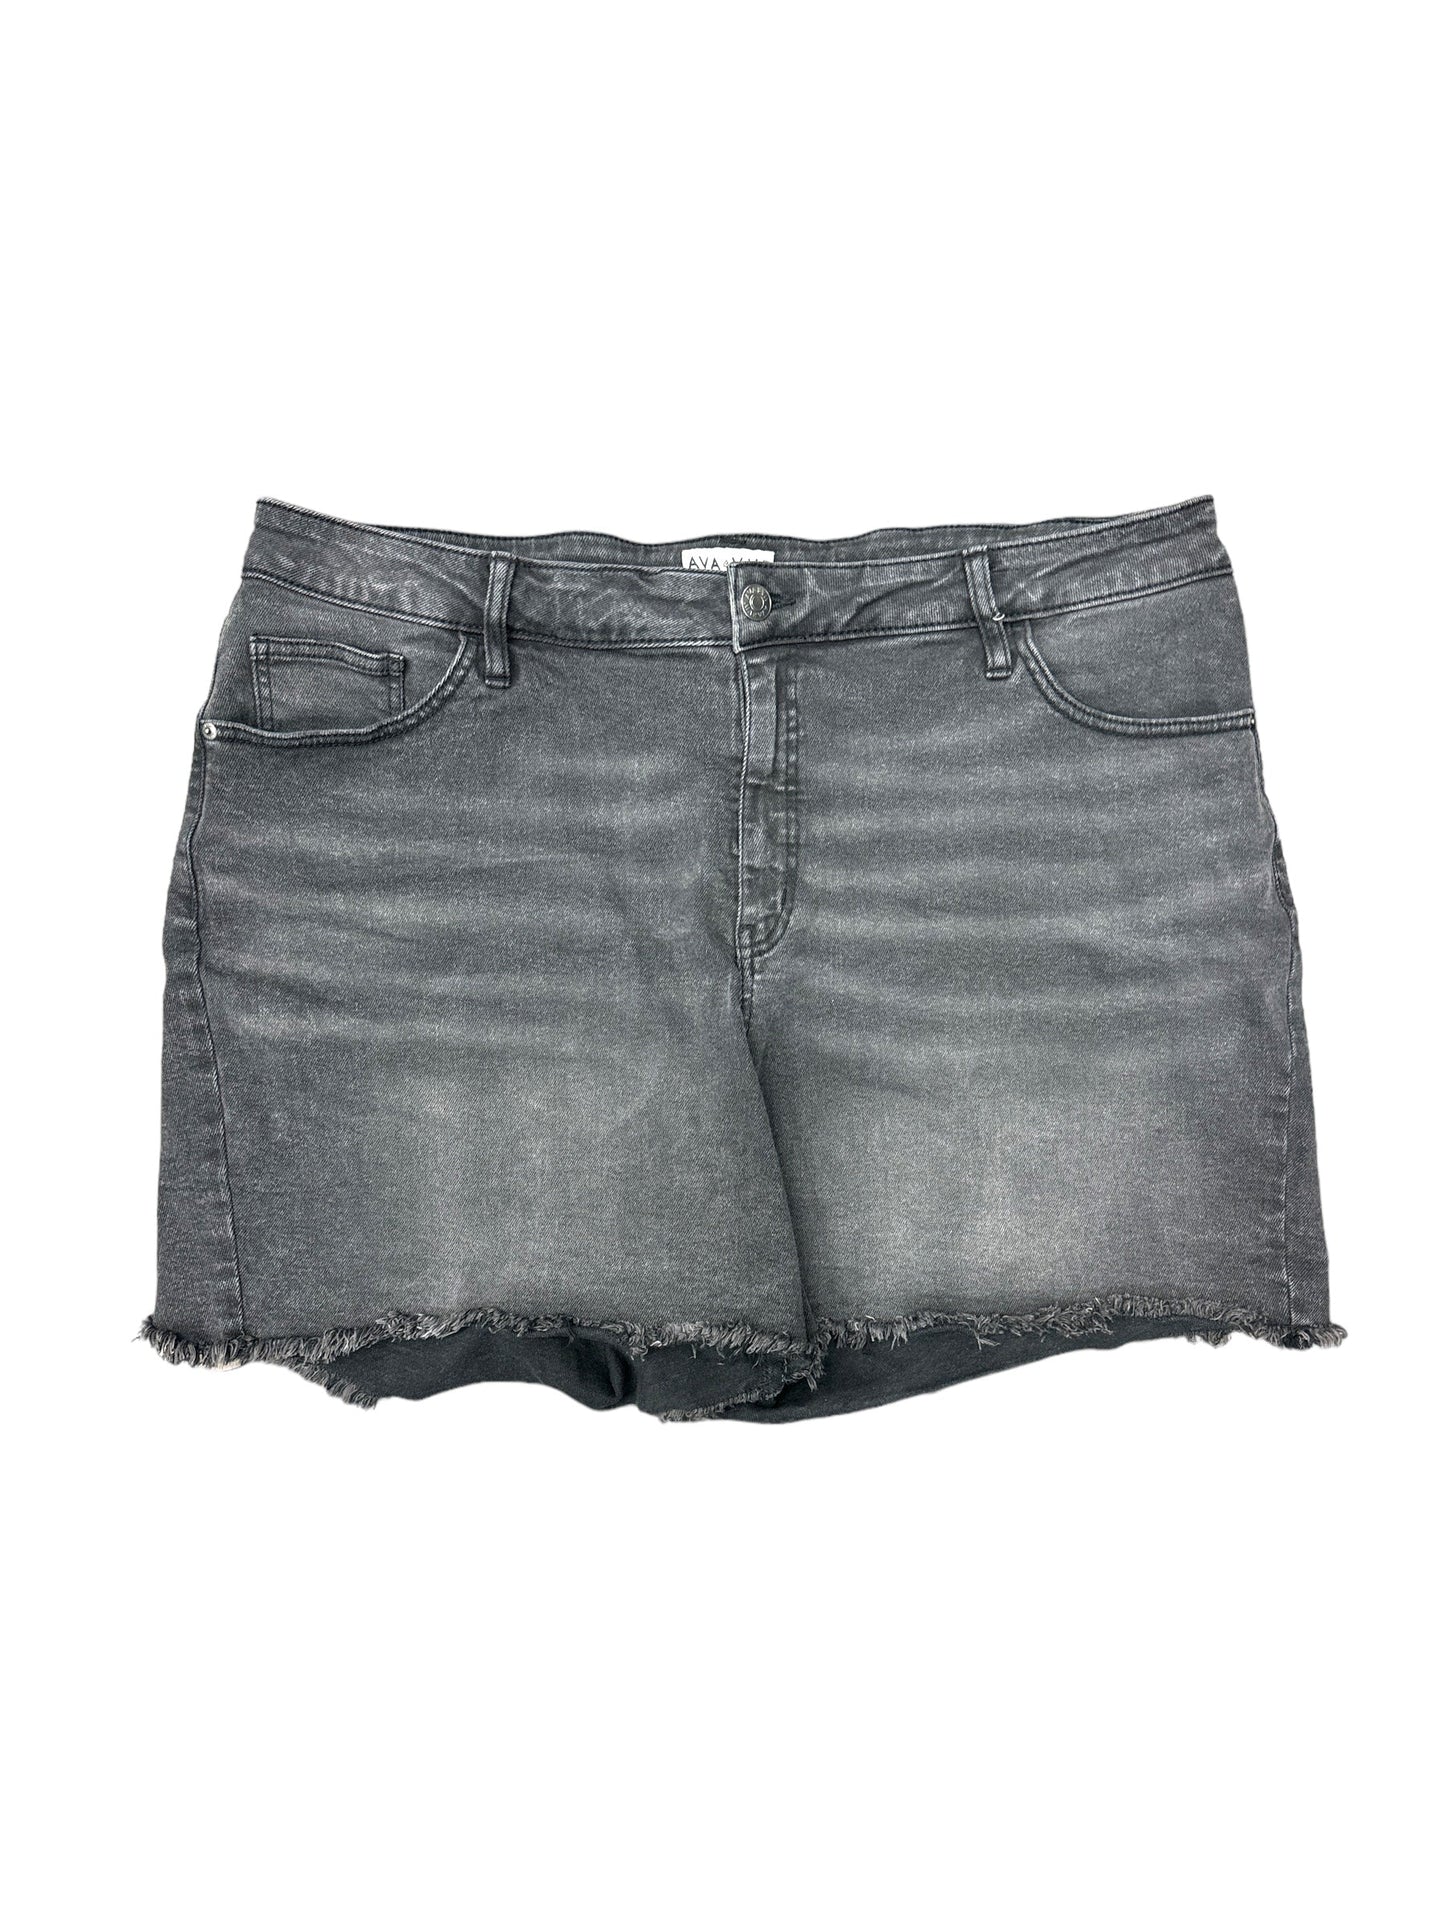 Grey Shorts Ava & Viv, Size 20w